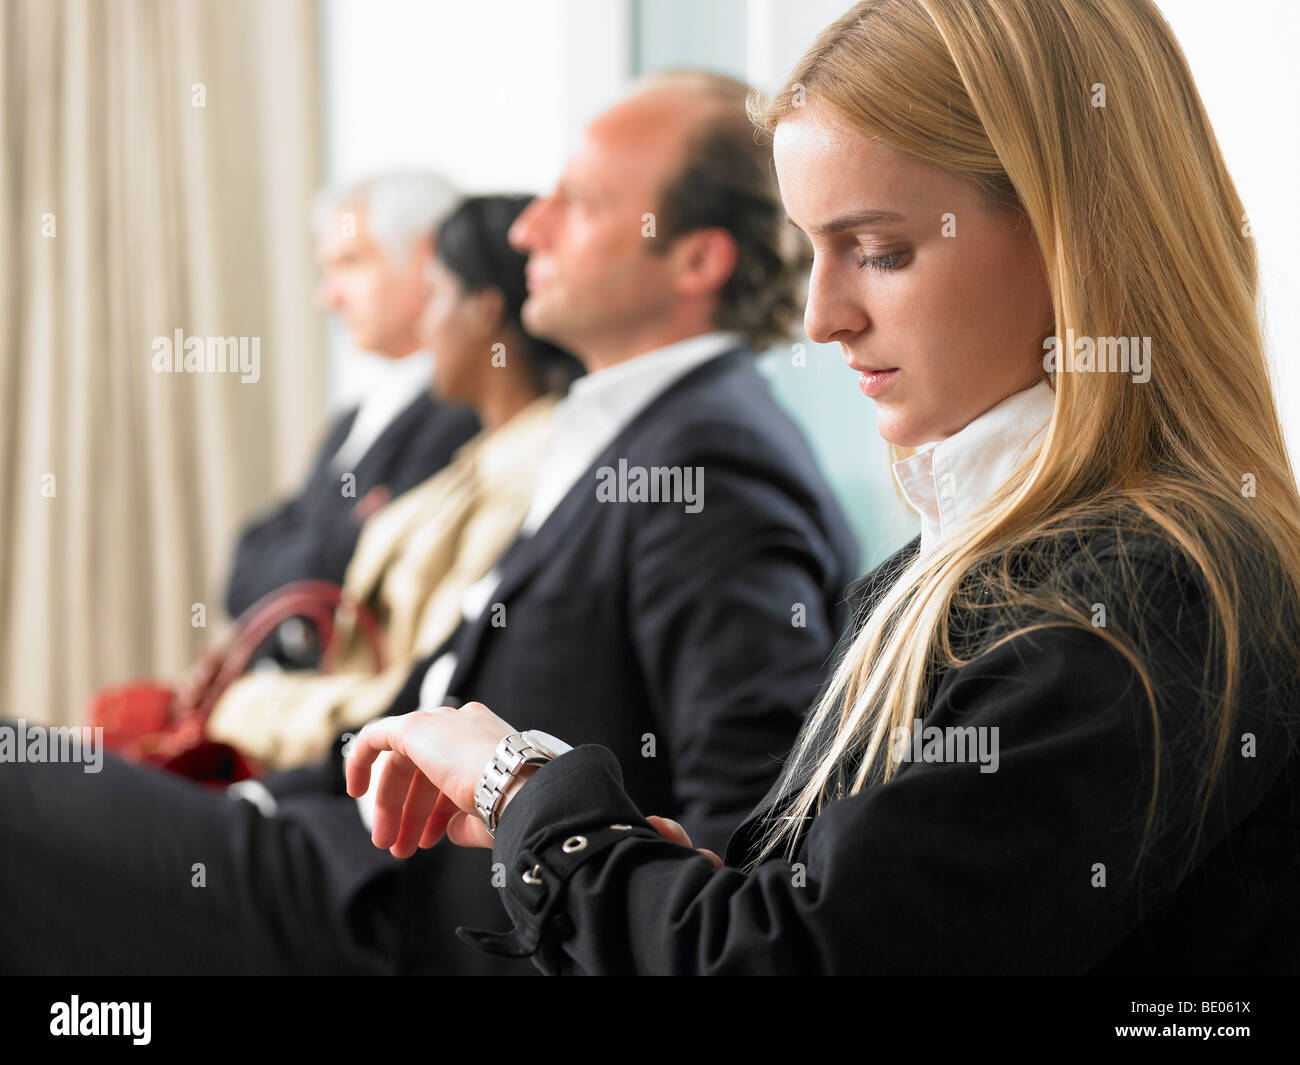 Les gens assis dans une salle d'attente Banque D'Images